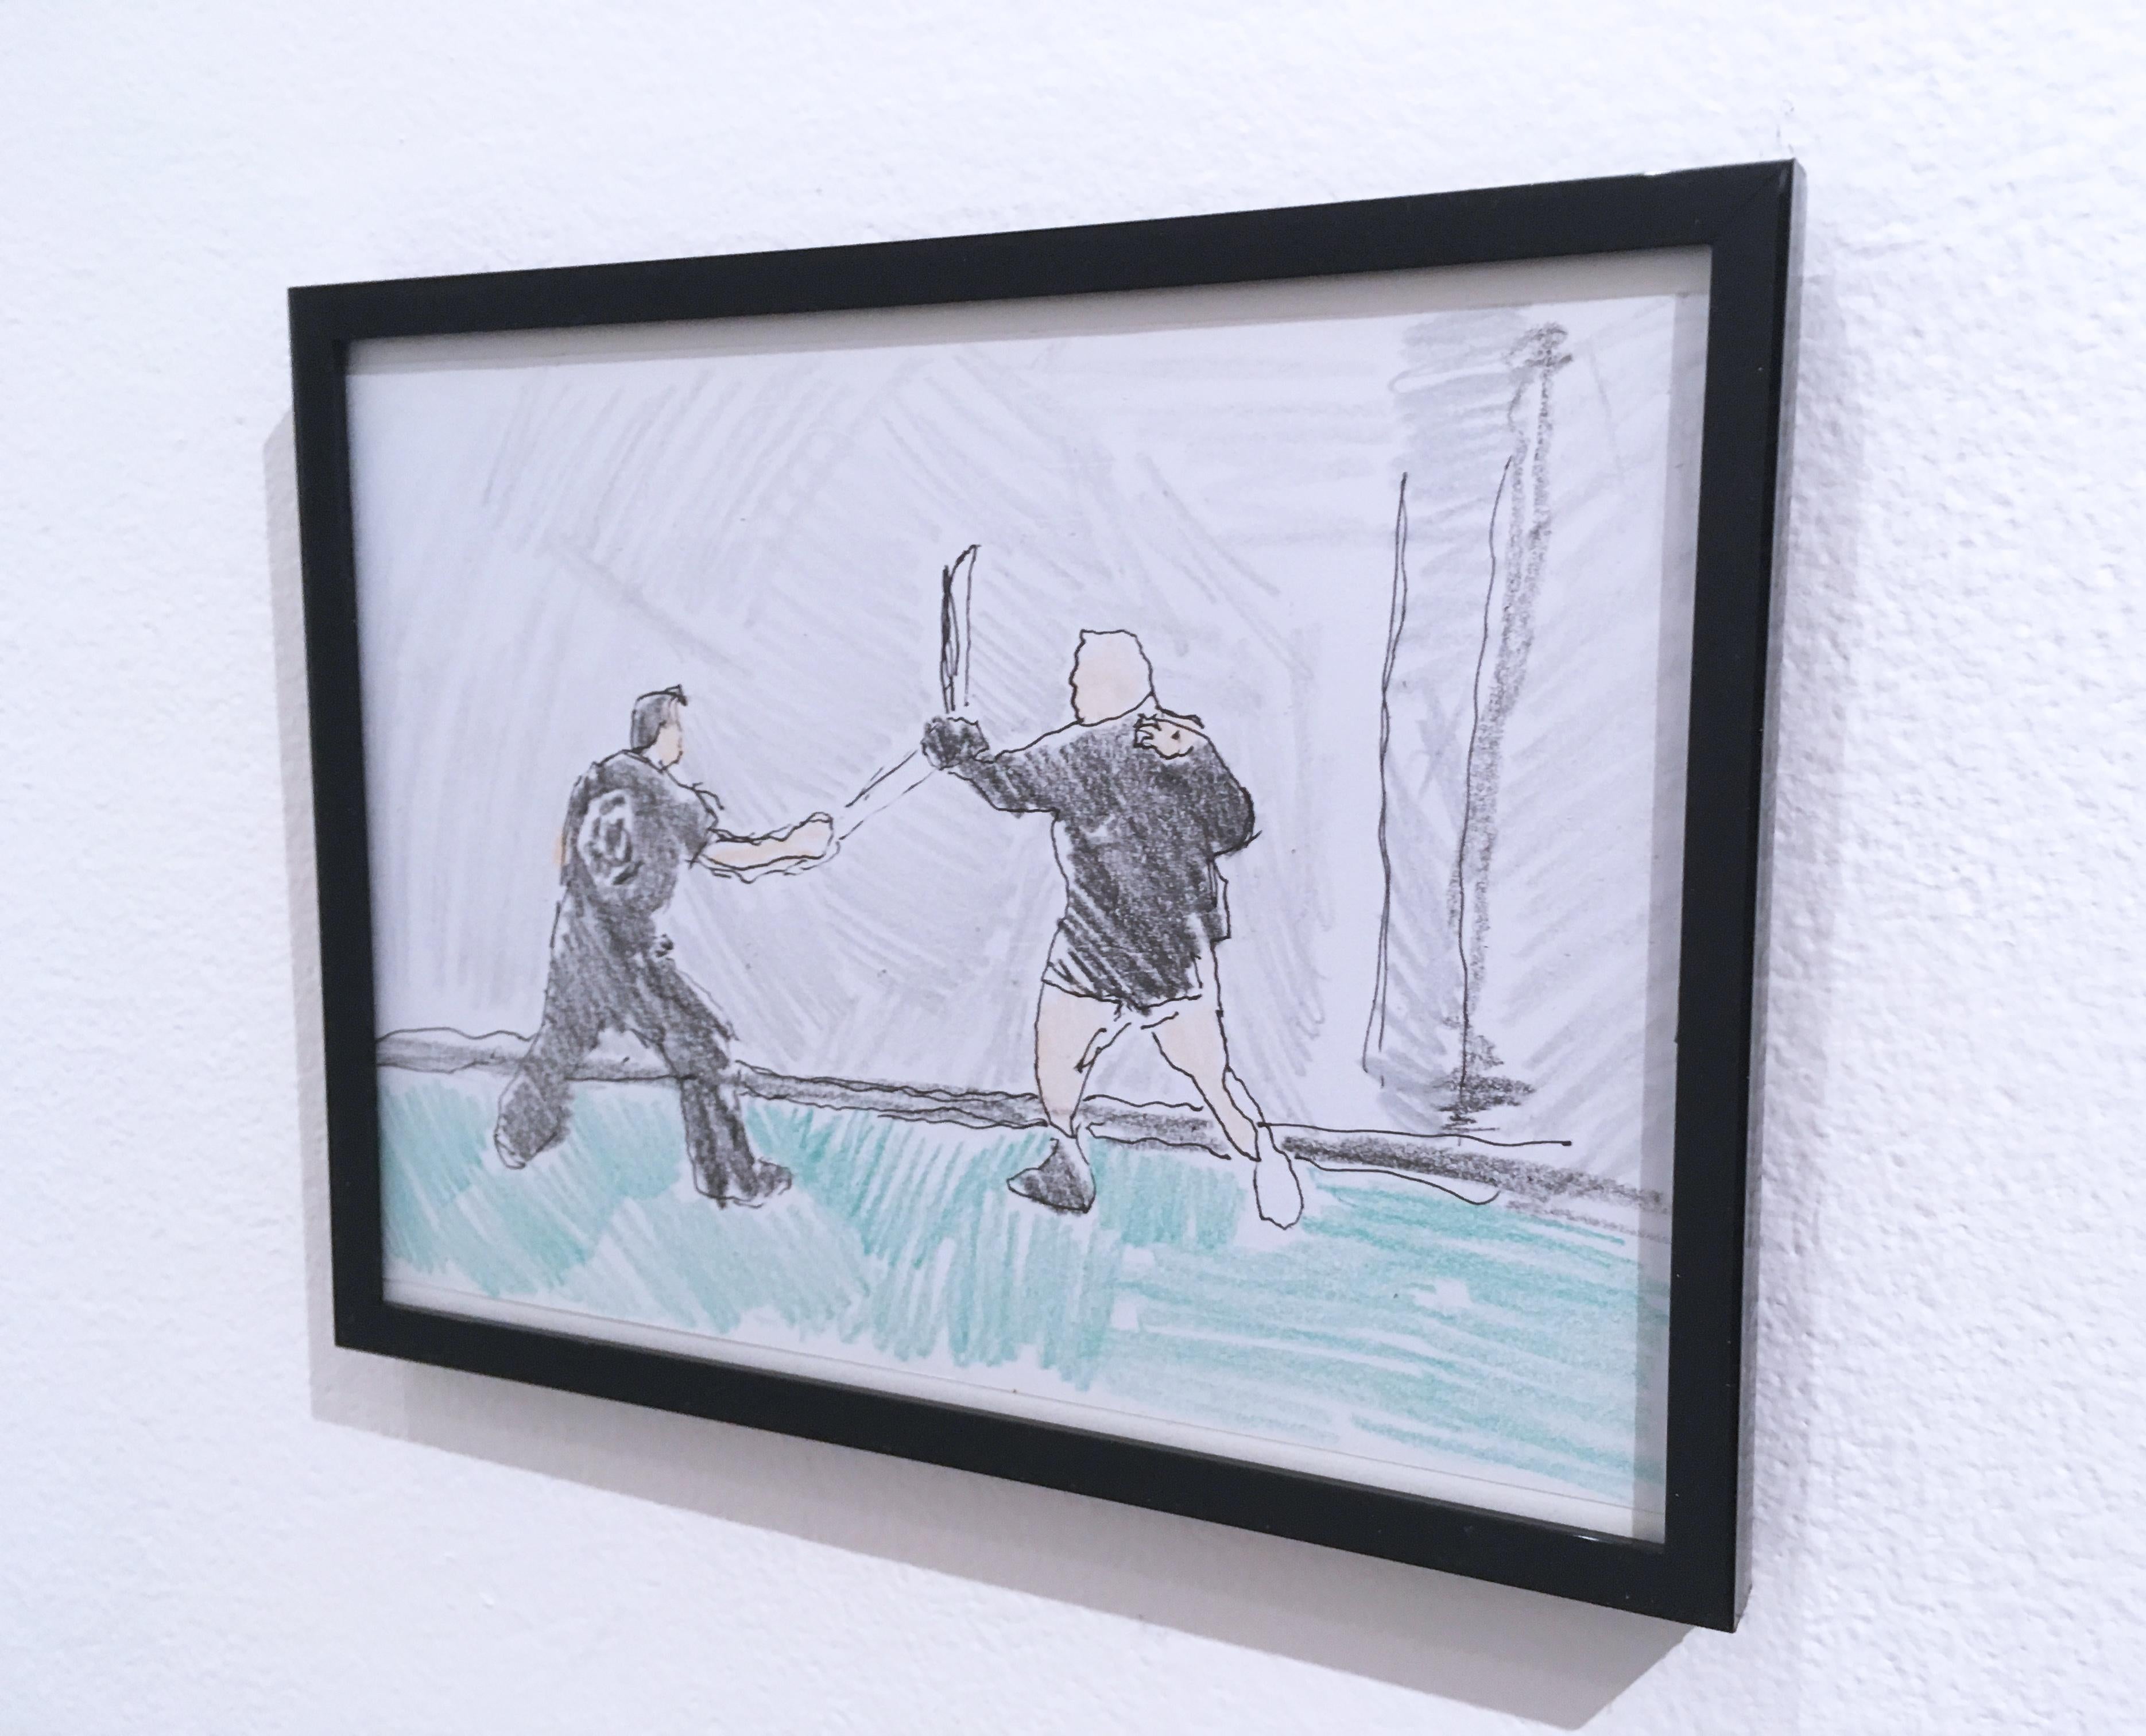 Sword Fight, 2018, stylo et crayon sur papier, figuratif, dessin, encadré - Contemporain Painting par Macauley Norman